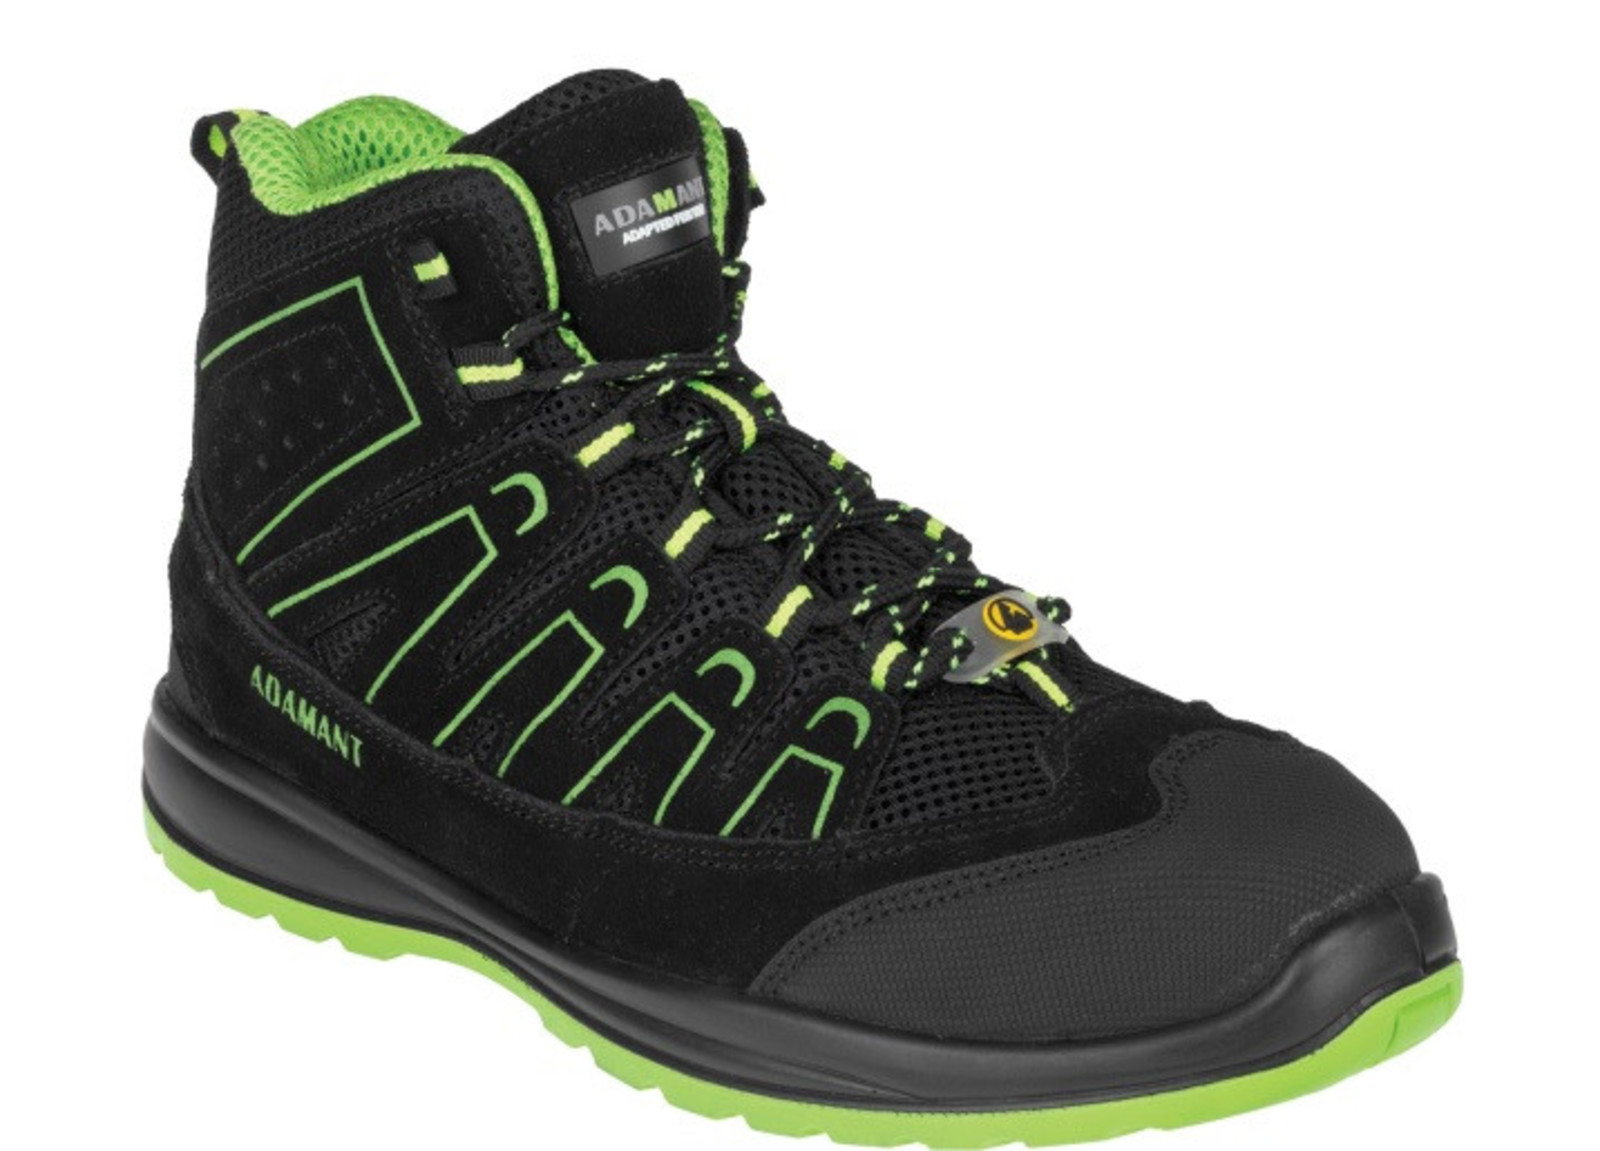 Bezpečnostná obuv Adamant Alegro S1P ESD - veľkosť: 47, farba: čierna/zelená